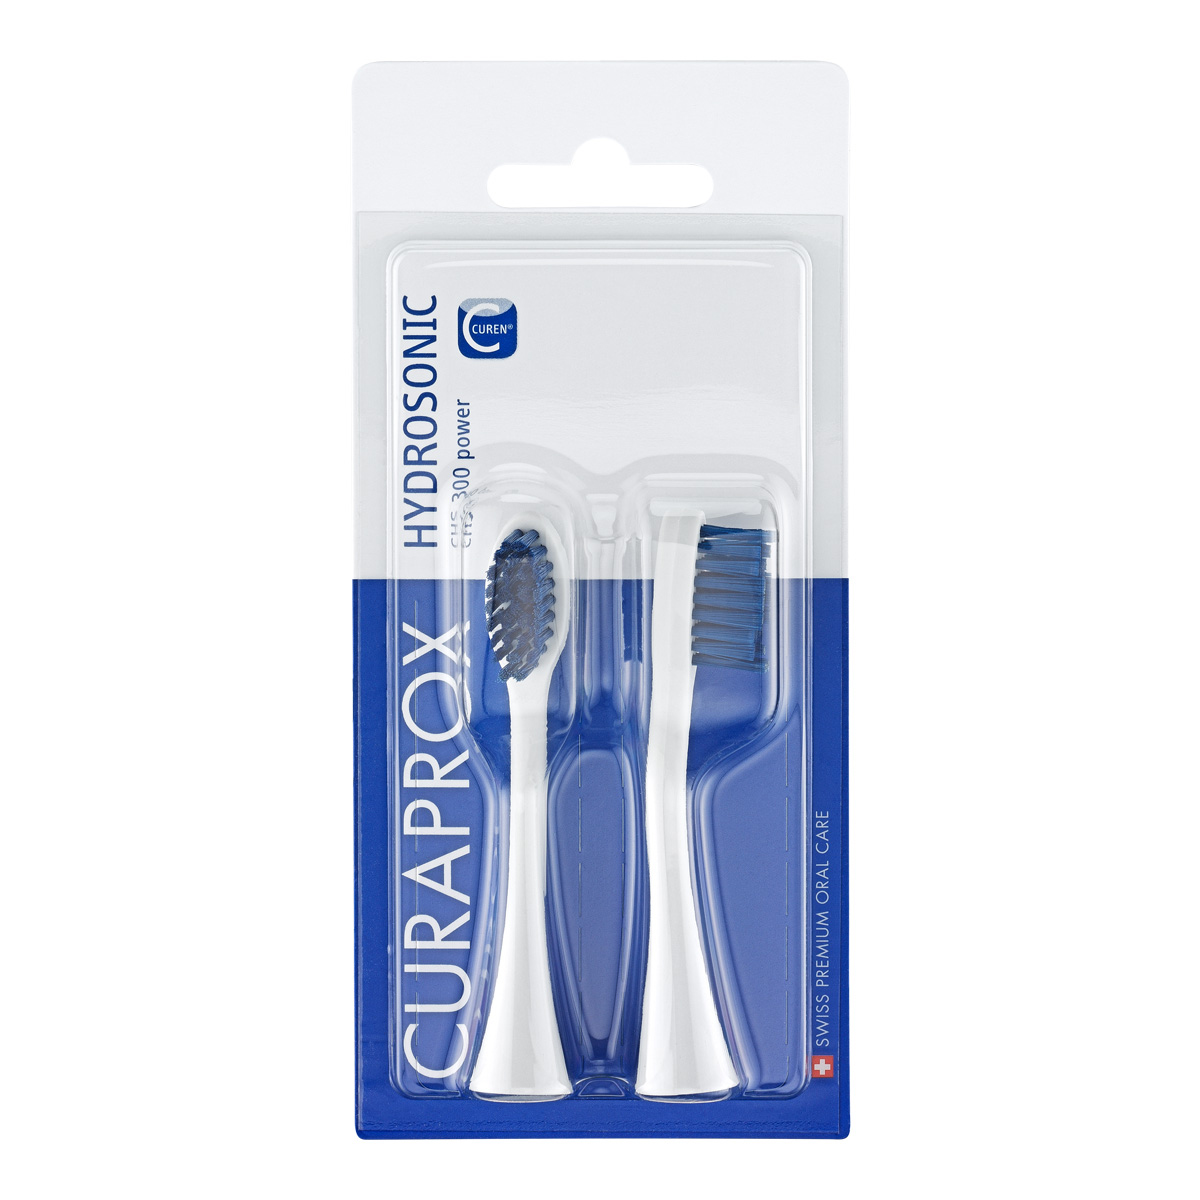 Комплект насадок Curaprox curaprox набор насадок pro sensitive к электрической звуковой зубной щетке hydrosonic pro